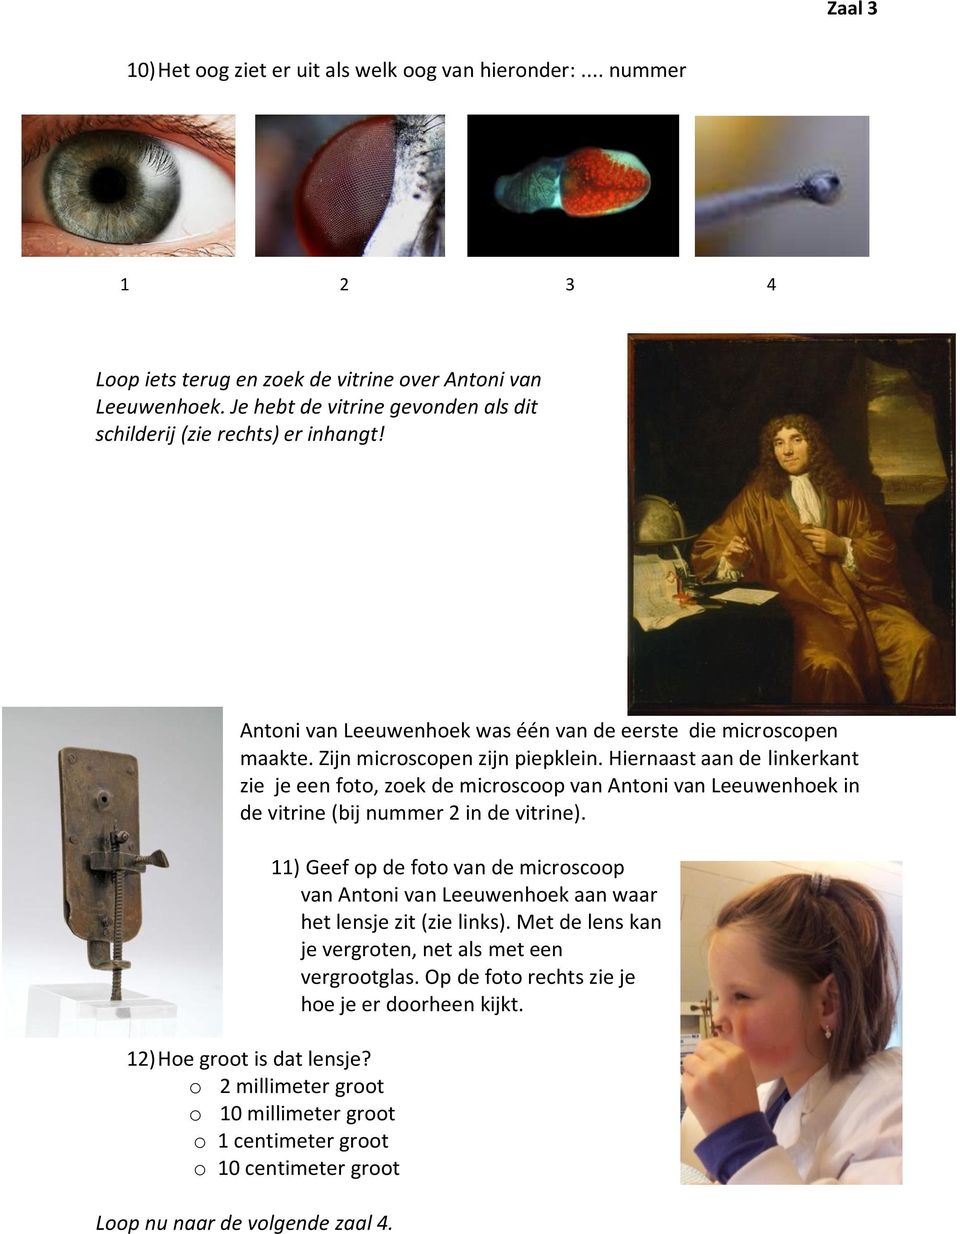 Hiernaast aan de linkerkant zie je een foto, zoek de microscoop van Antoni van Leeuwenhoek in de vitrine (bij nummer 2 in de vitrine). 12) Hoe groot is dat lensje?